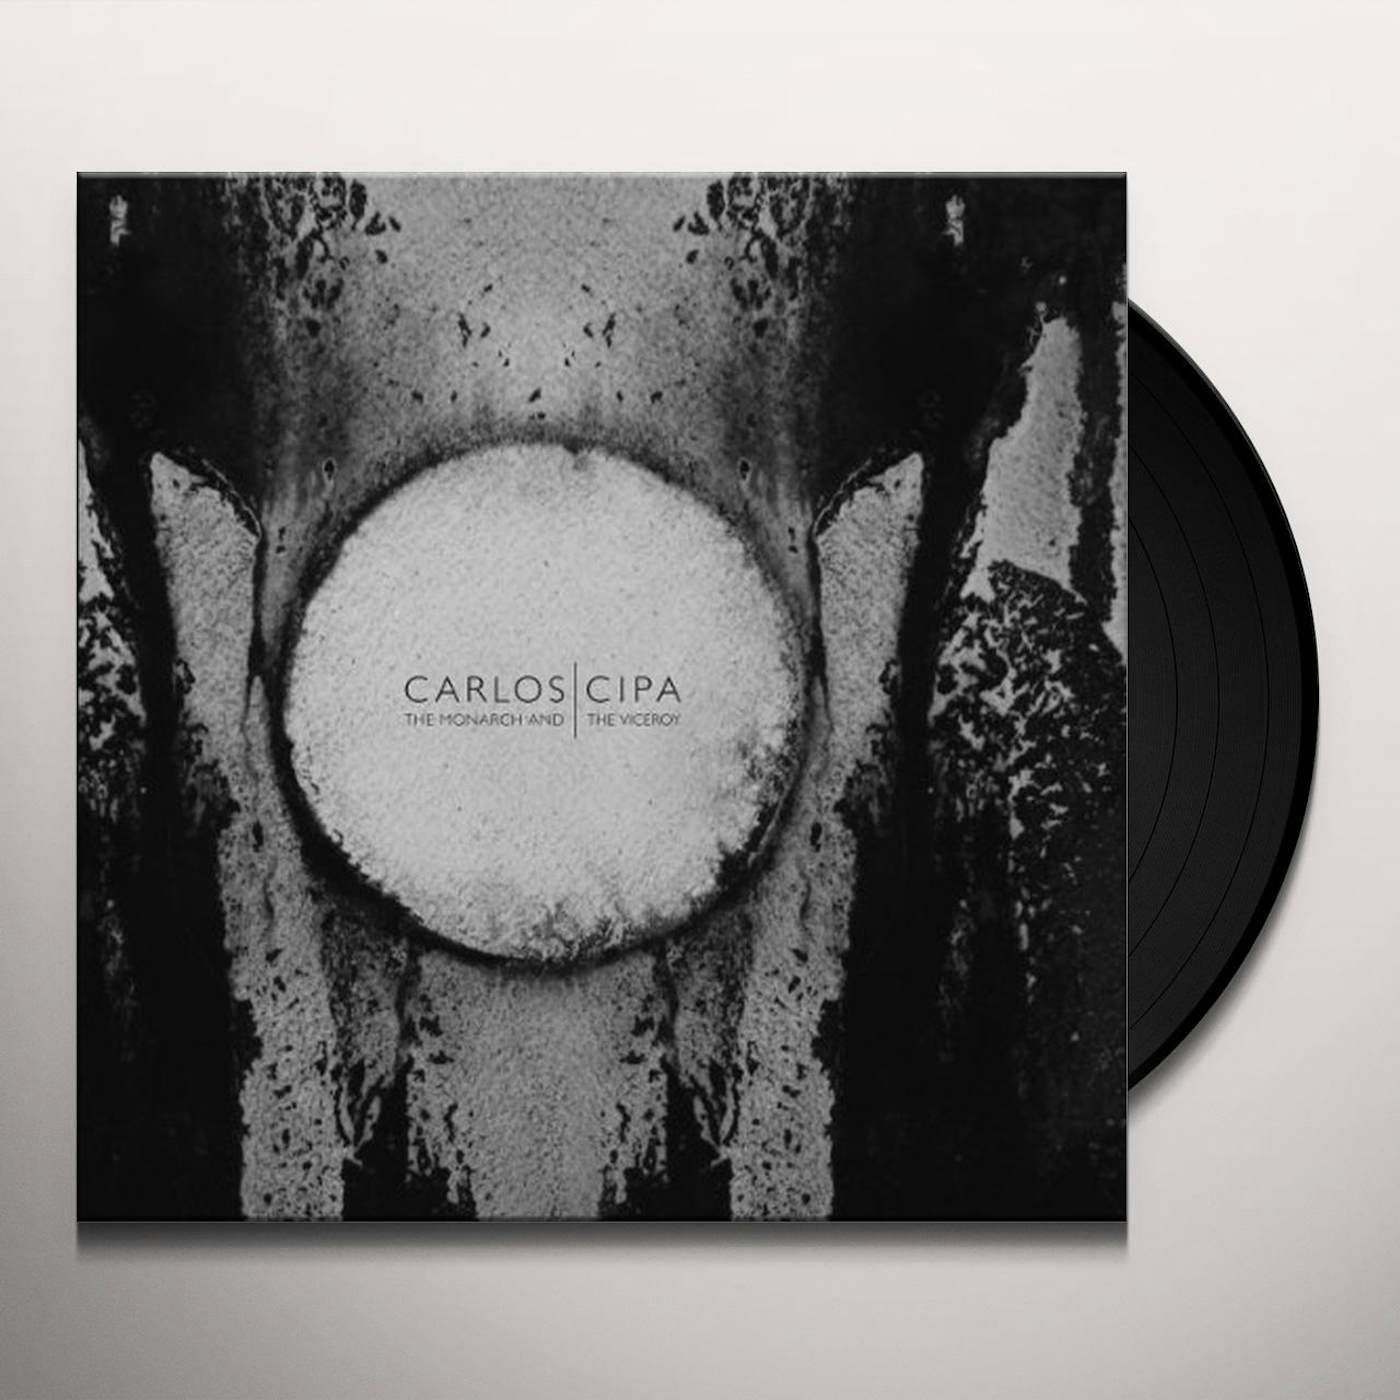 Carlos Cipa MONARCH & THE VICEROY Vinyl Record